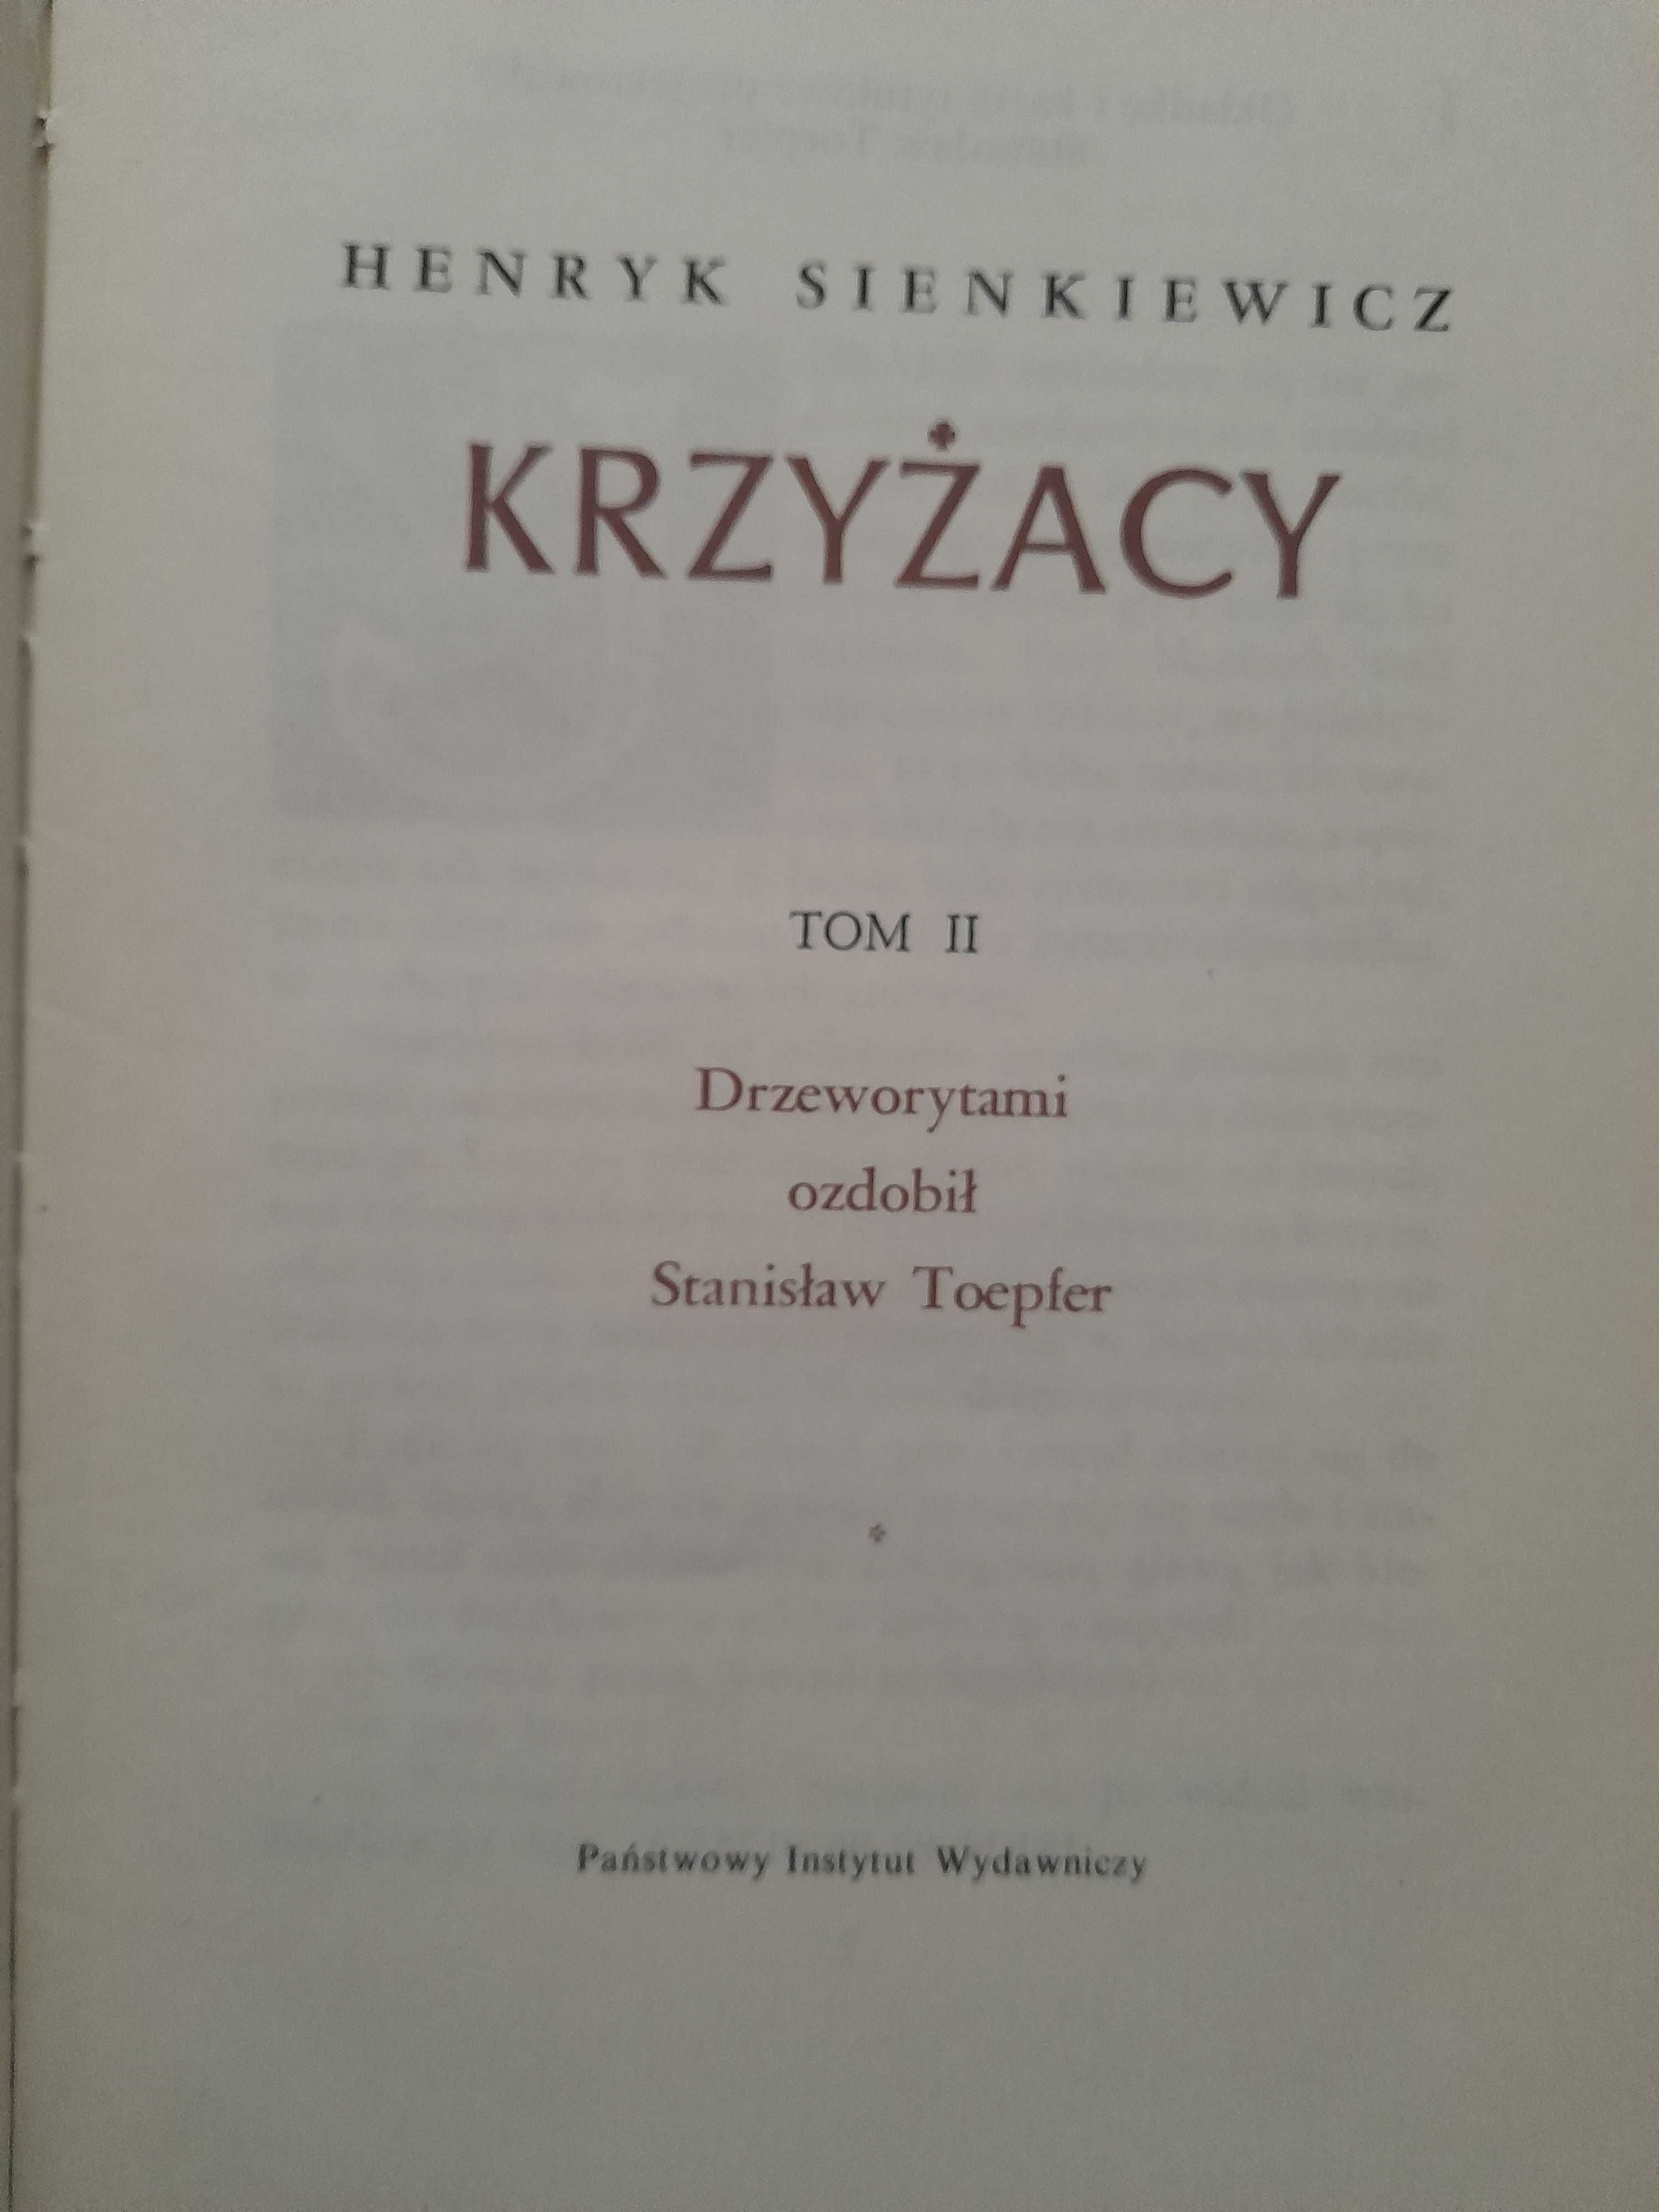 Krzyżacy - ilustrowane drzeworytami Henryk Sienkiewicz